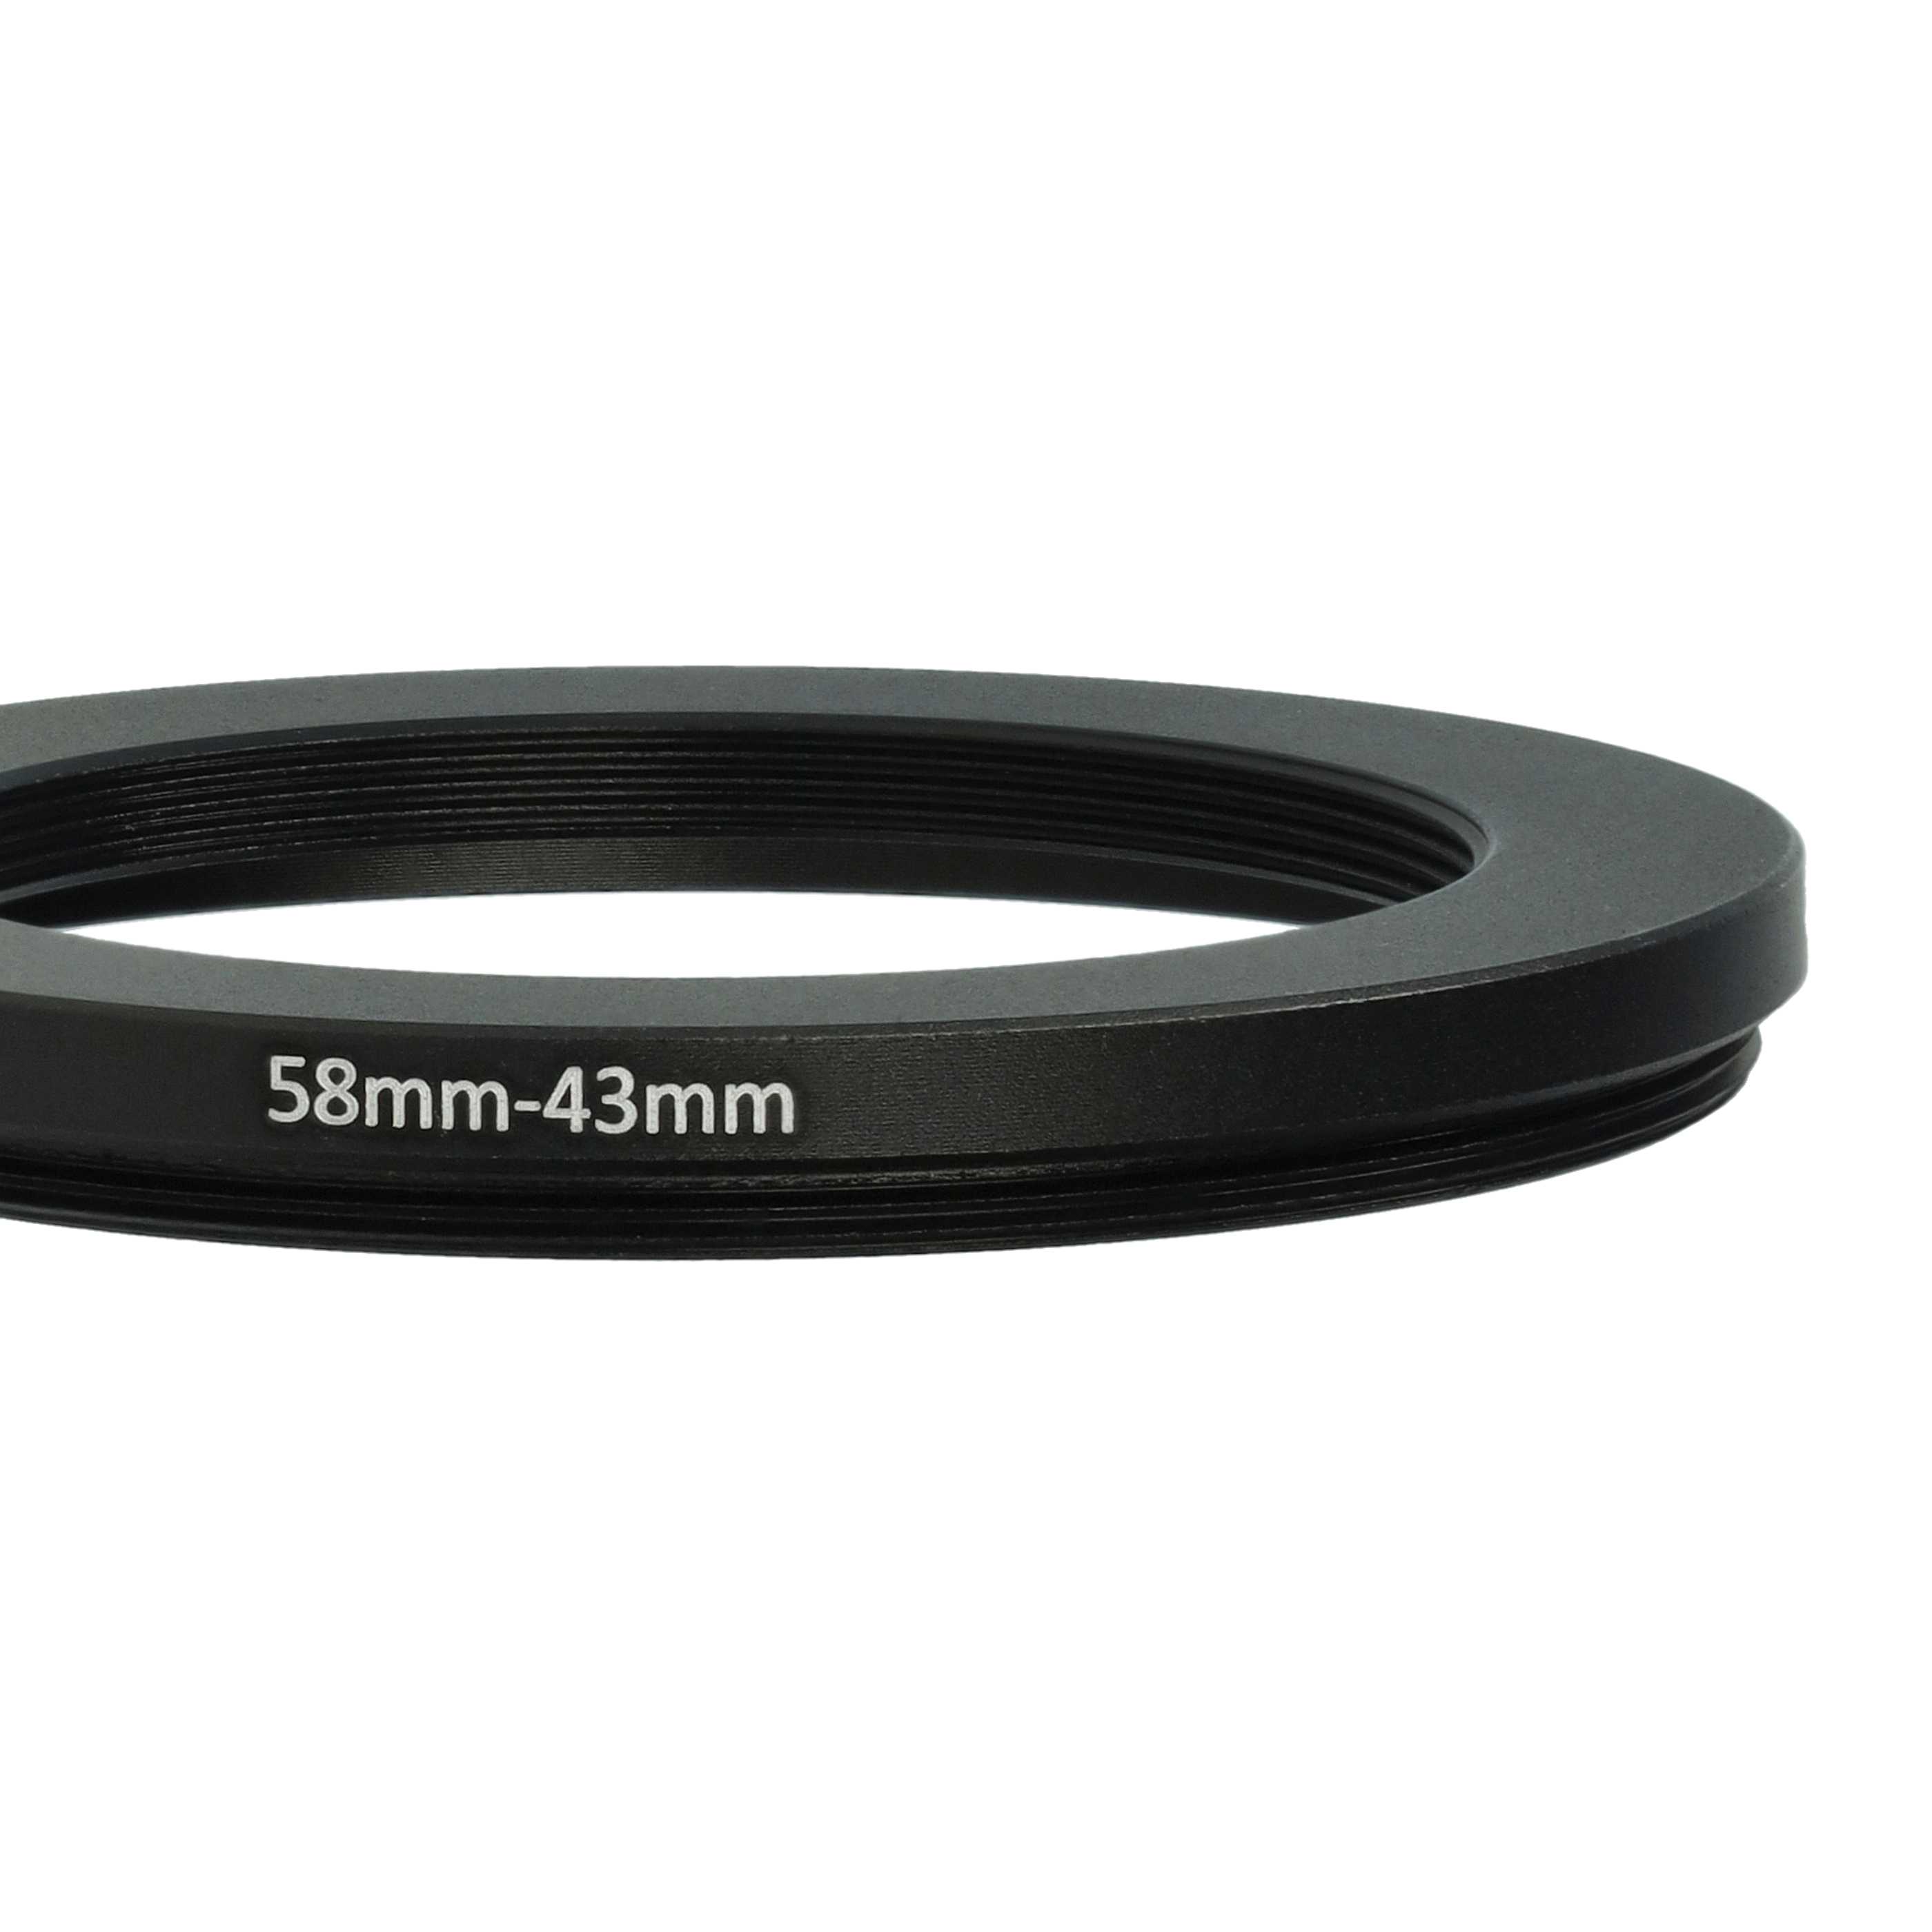 Anillo adaptador Step Down de 58 mm a 43 mm para objetivo de la cámara - Adaptador de filtro, metal, negro